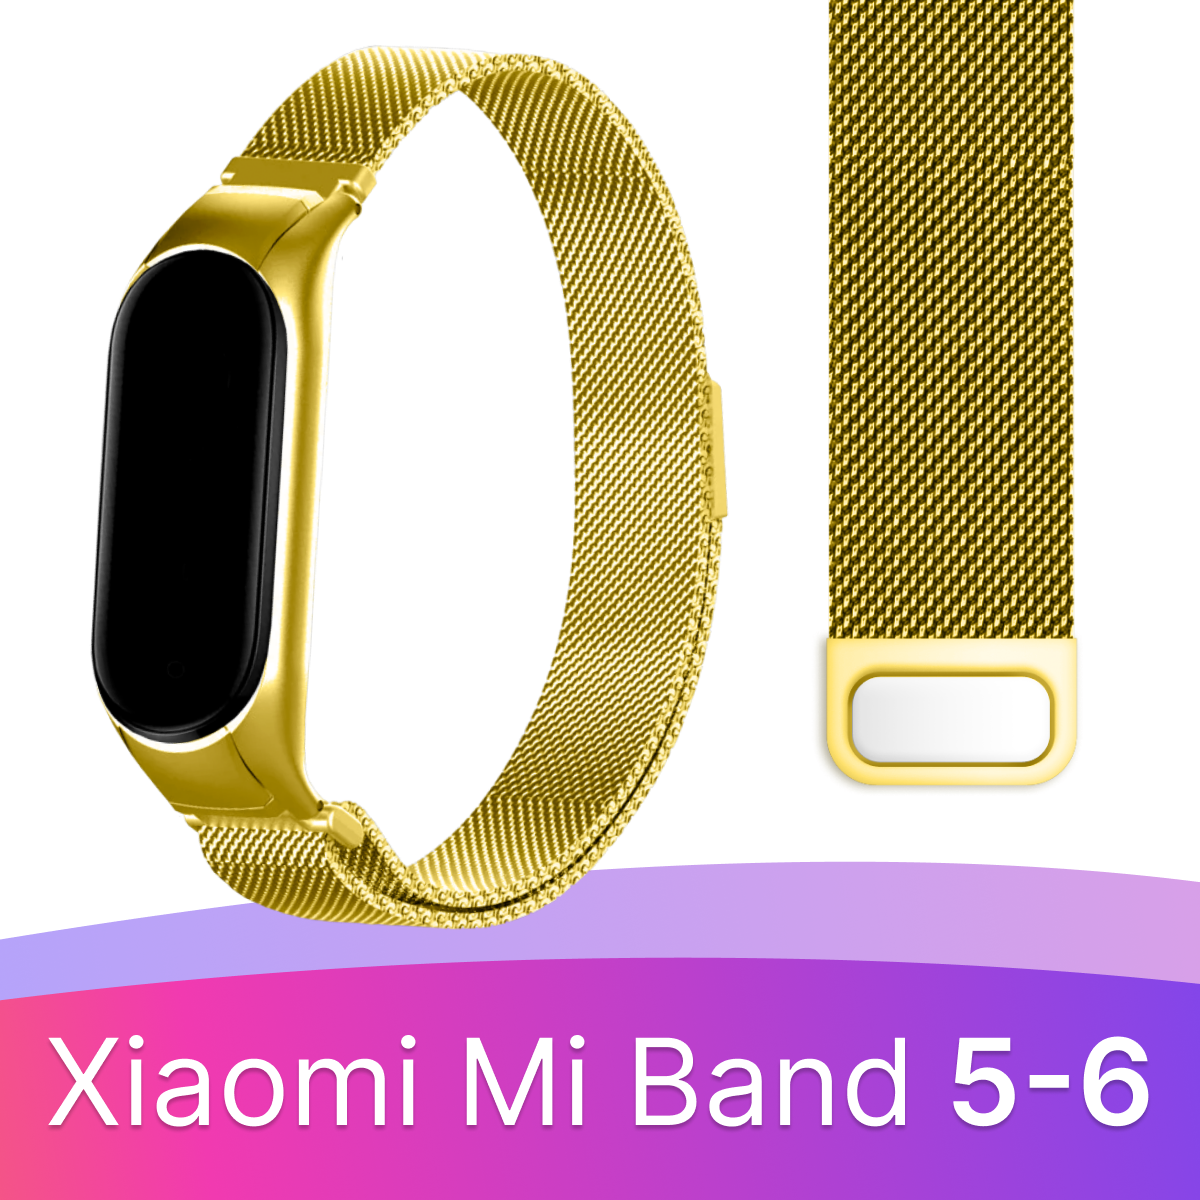 Ремешок миланская петля для смарт часов Xiaomi Mi Band 5 6 / Металлический браслет (milanese loop) для фитнес трекера Сяоми Ми Бэнд 5 6 /Фиолетовый